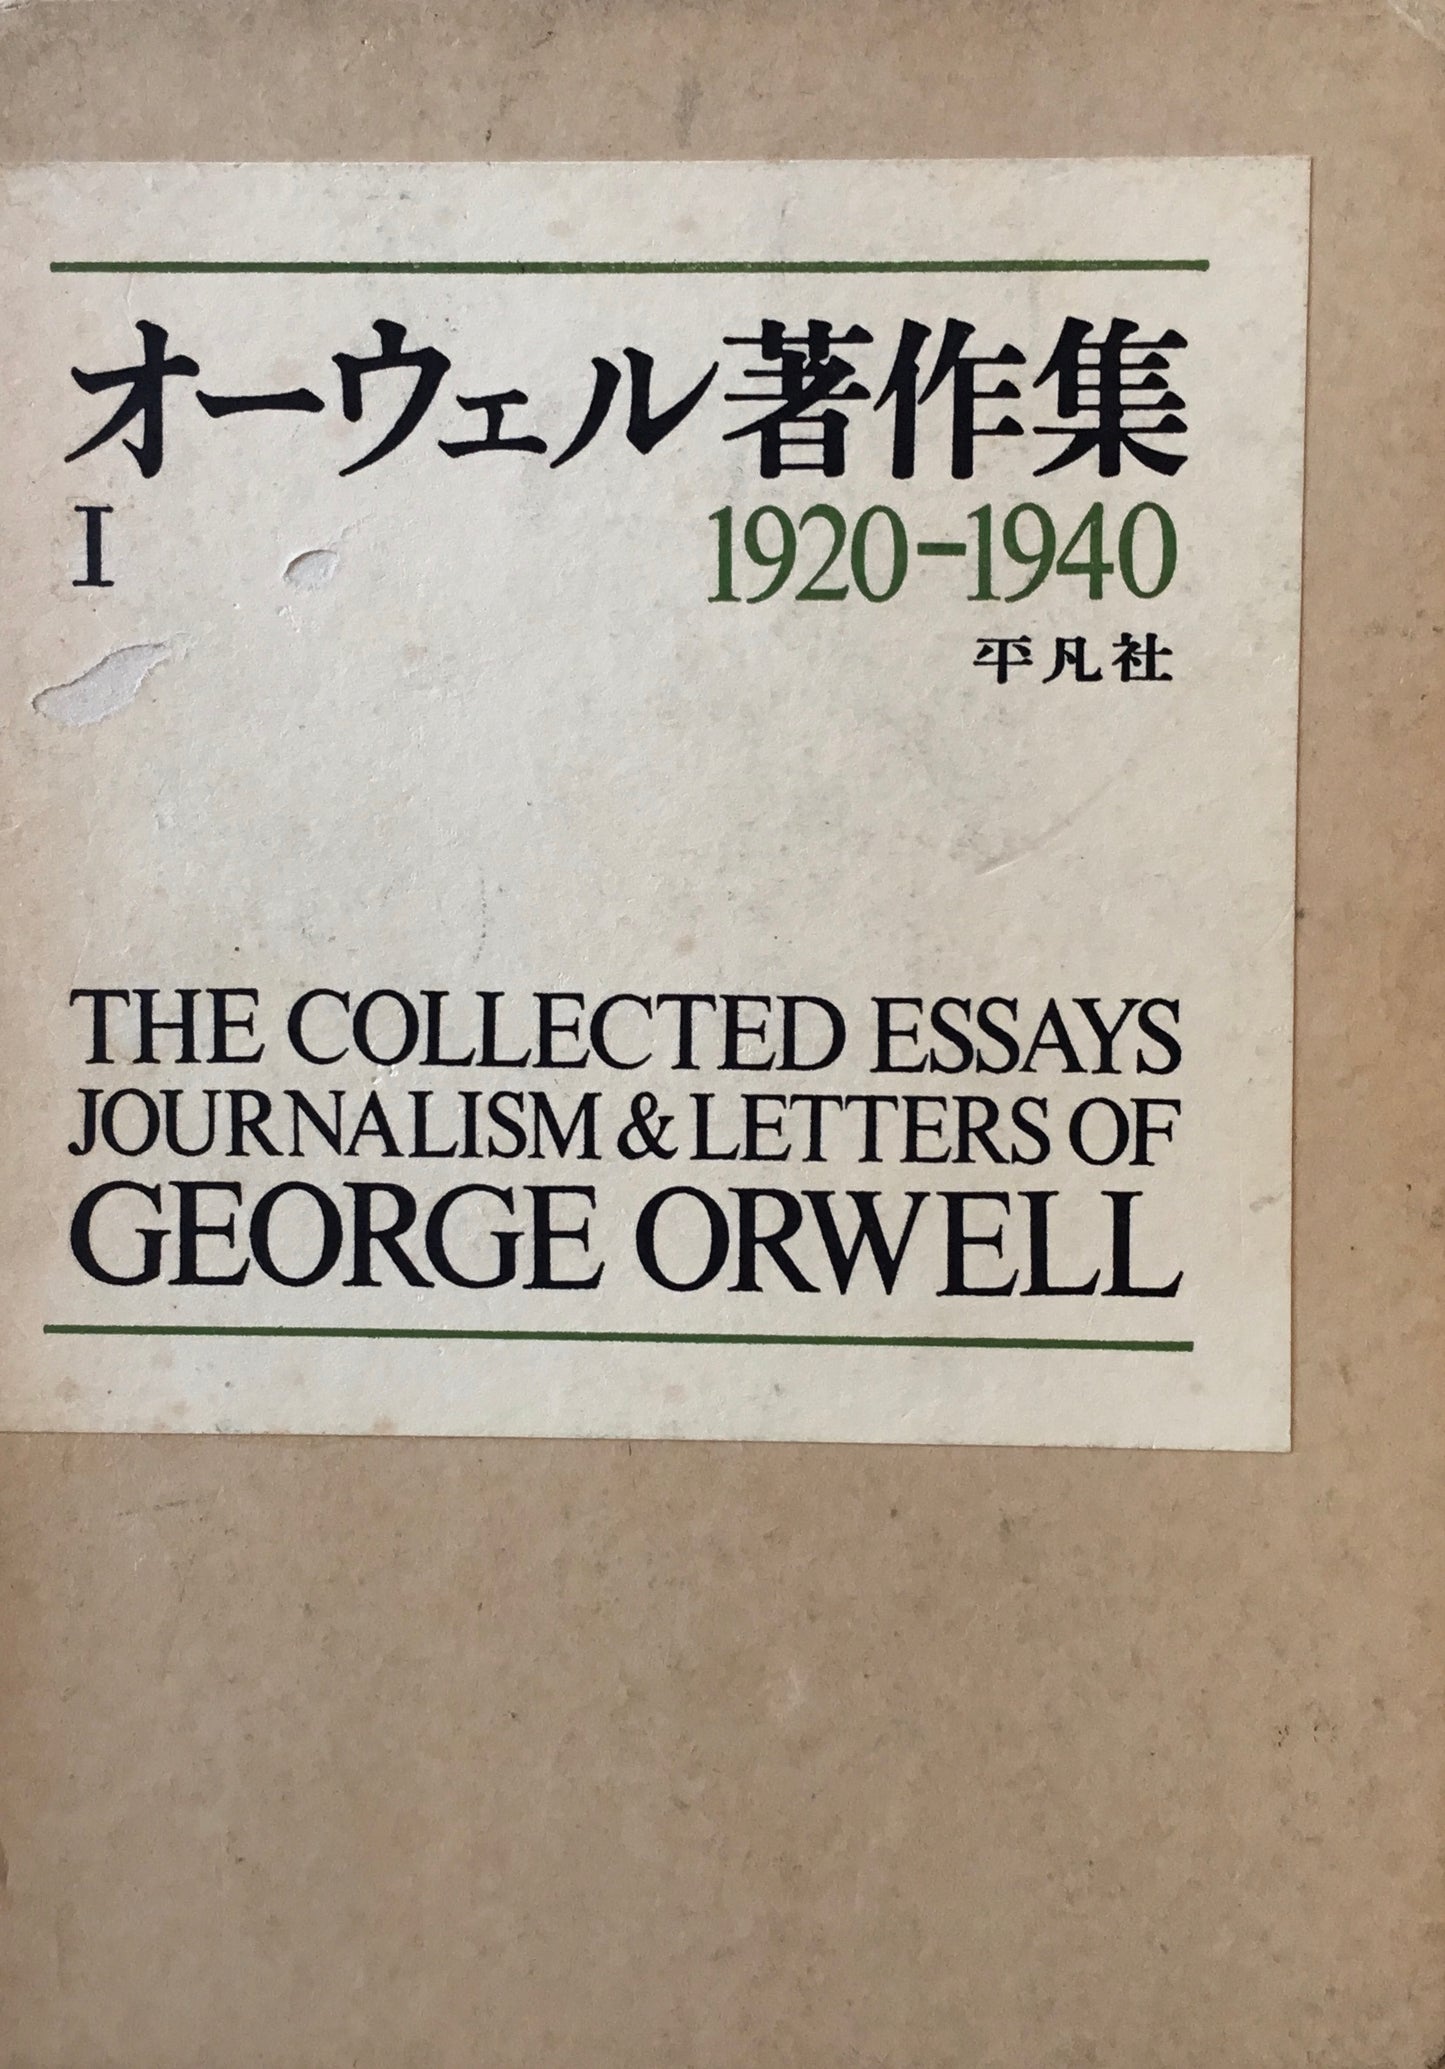 オーウェル著作集I　1920-1940